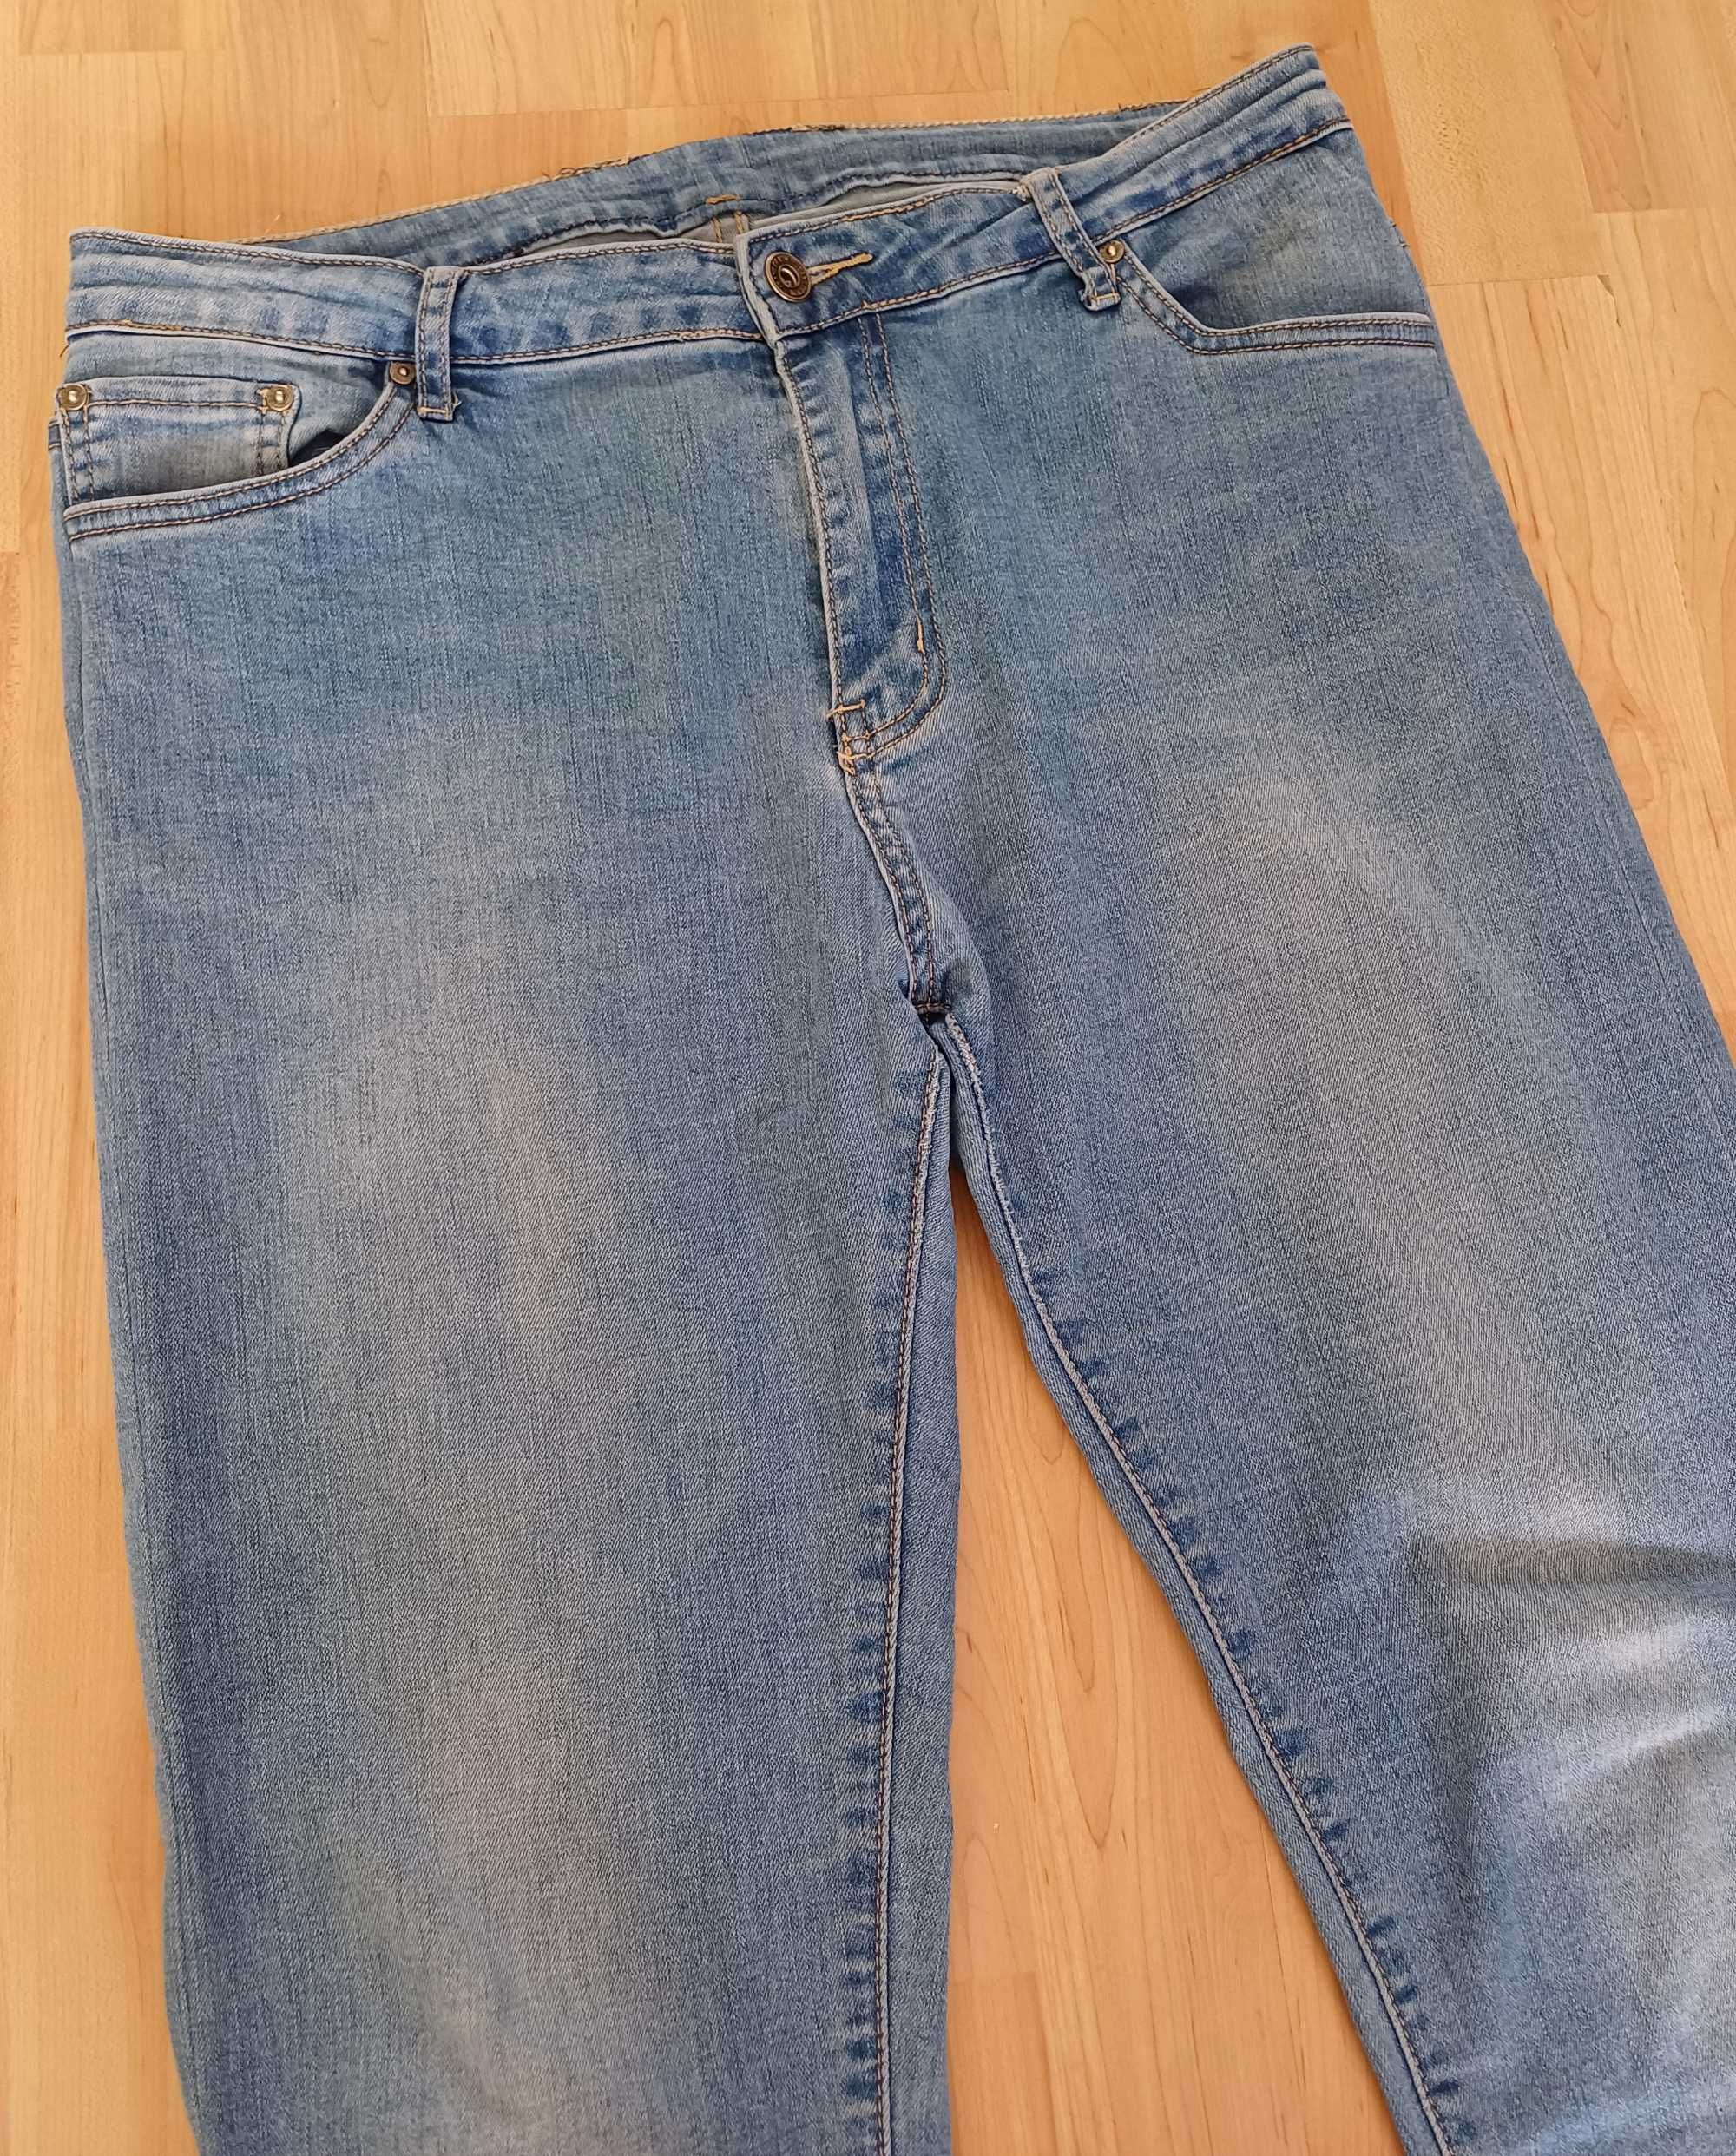 Spodnie długie damskie jeans niebieskie elastyczne 44/XXL wysoki stan